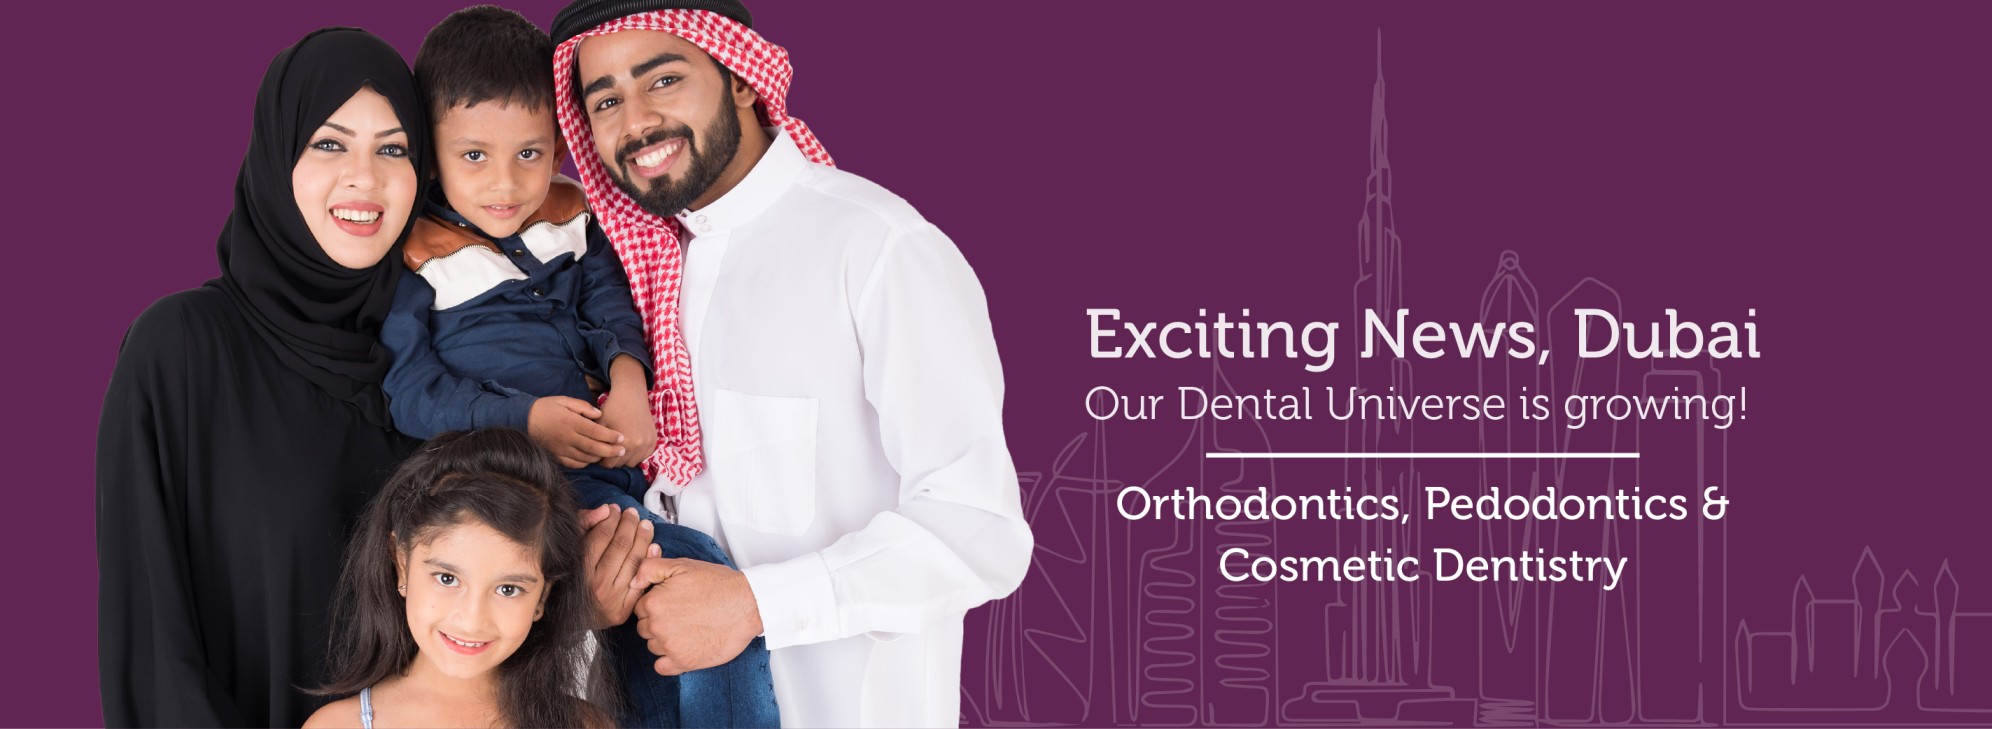 Dubai Dental expansion